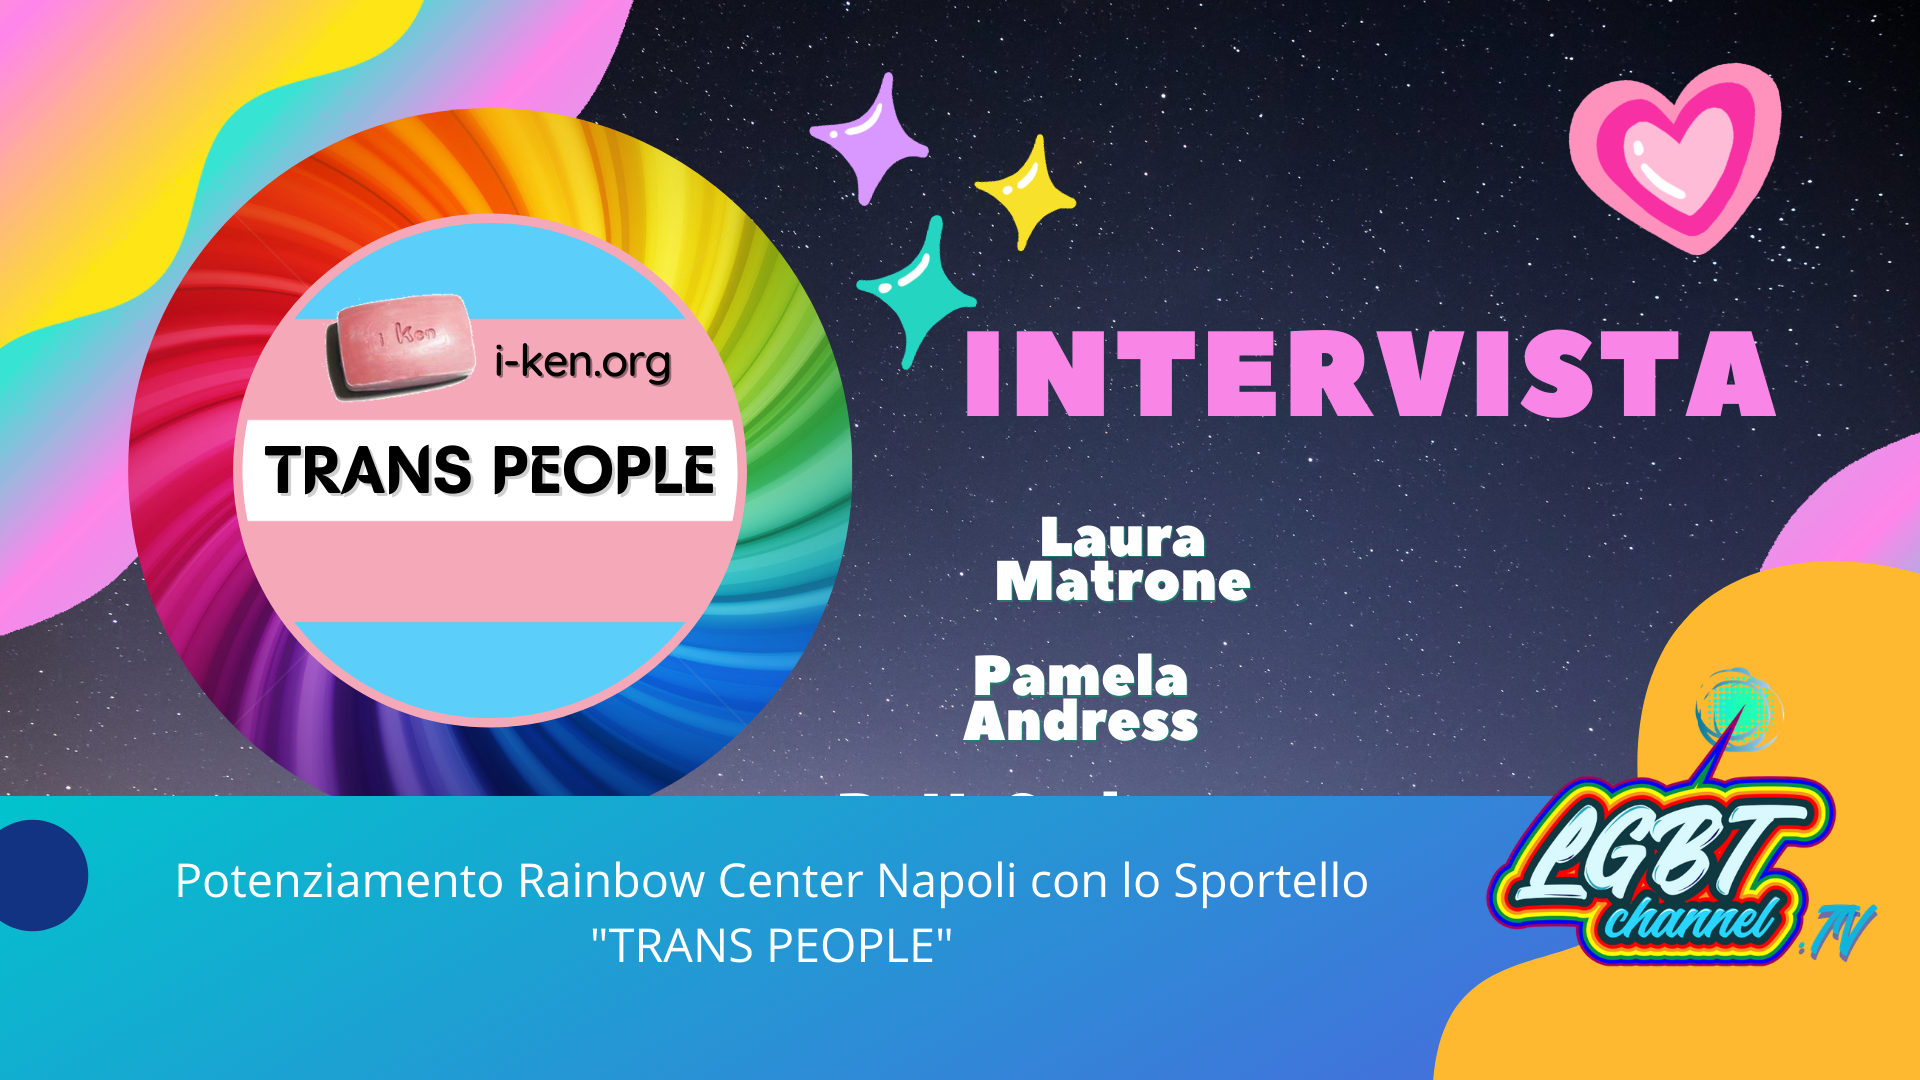 #News | Potenziamento Rainbow Center Napoli con lo Sportello "TRANS PEOPLE"